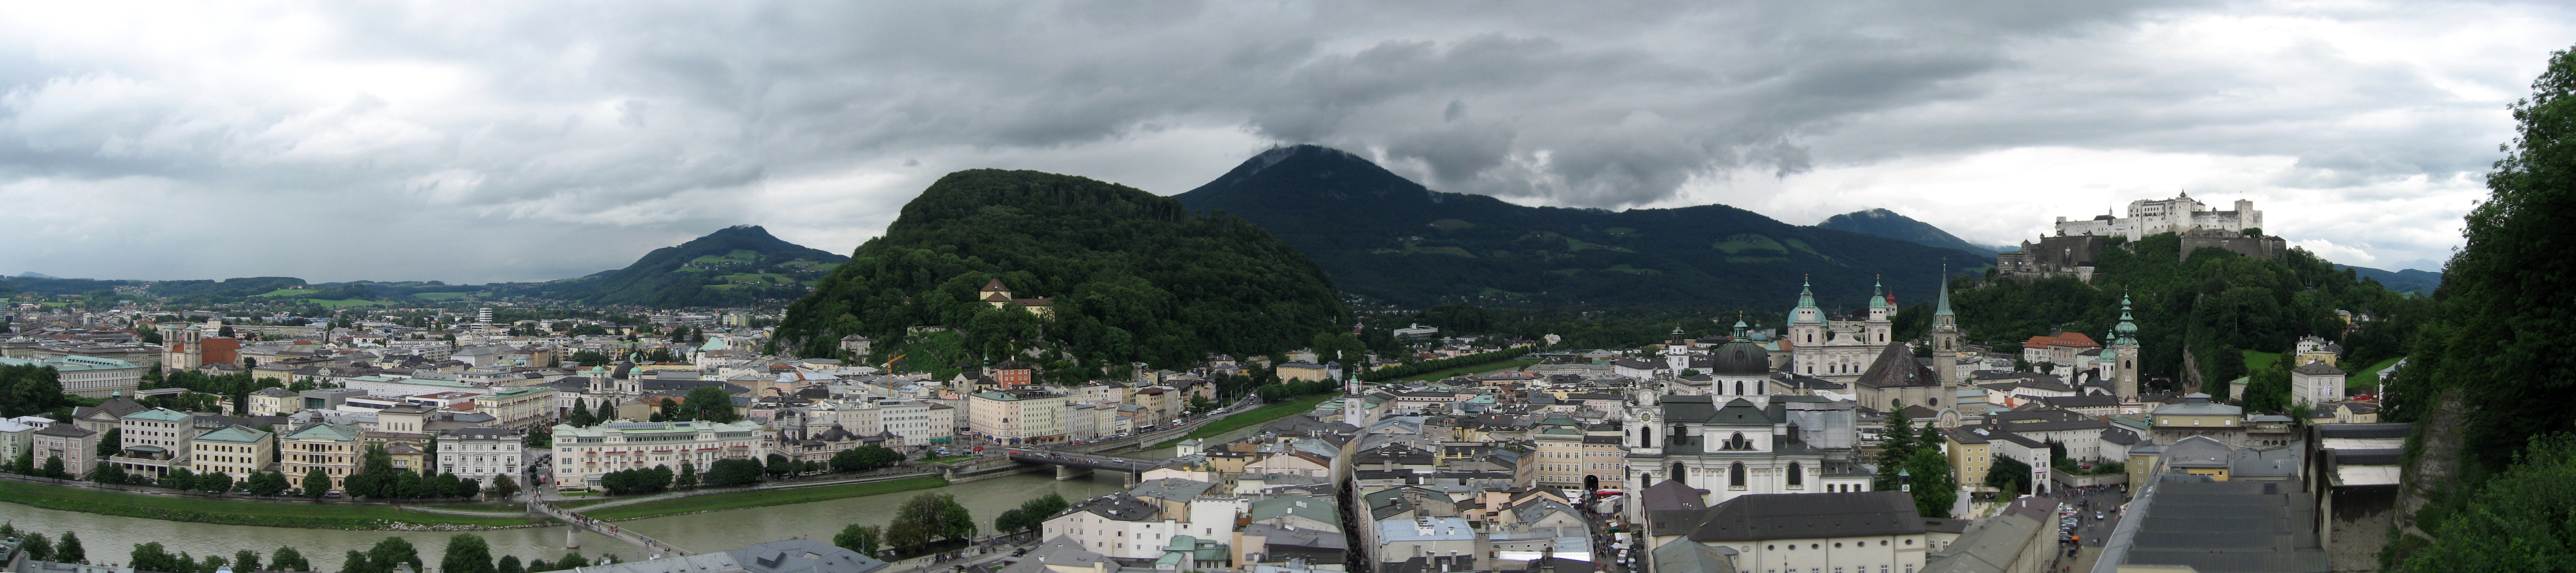 Salzburg Altstadt Panorama.jpg